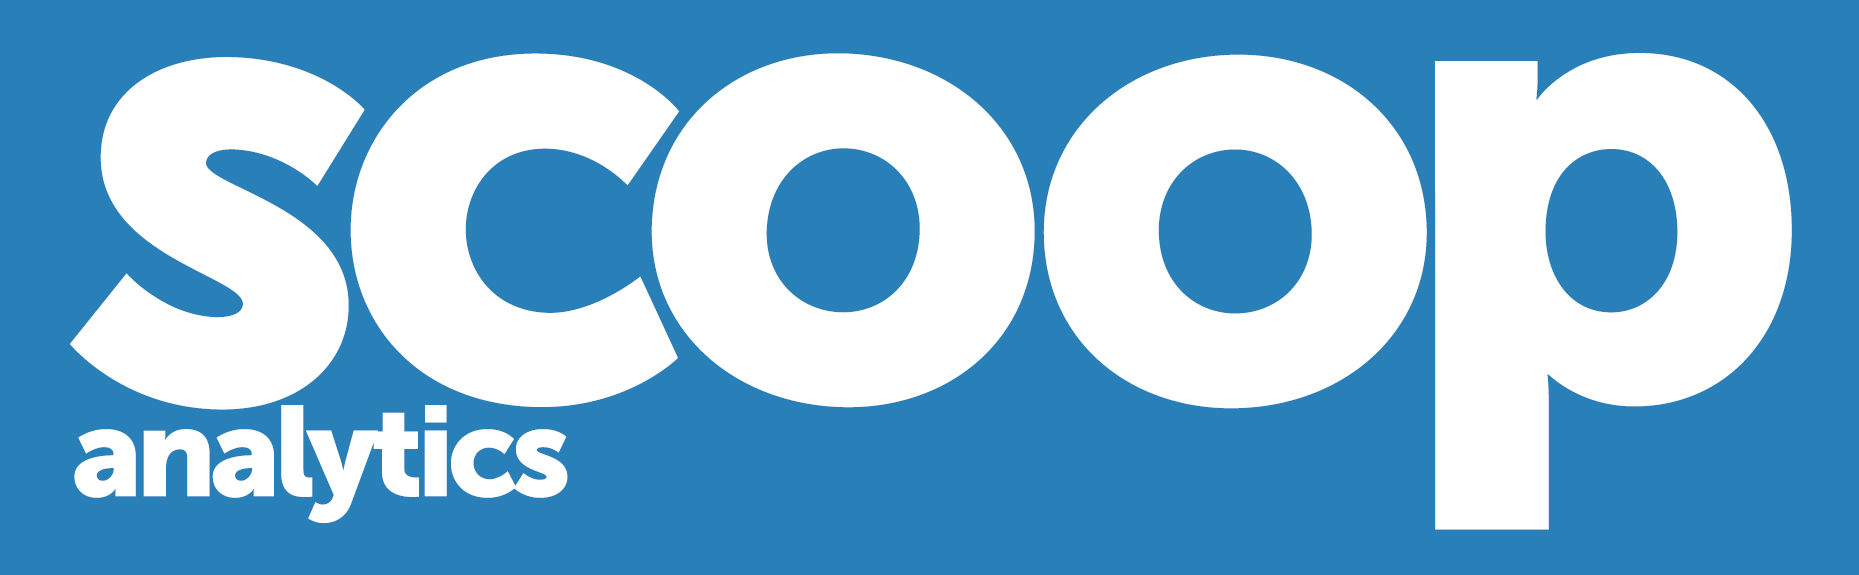 Scoop Analytics Logo